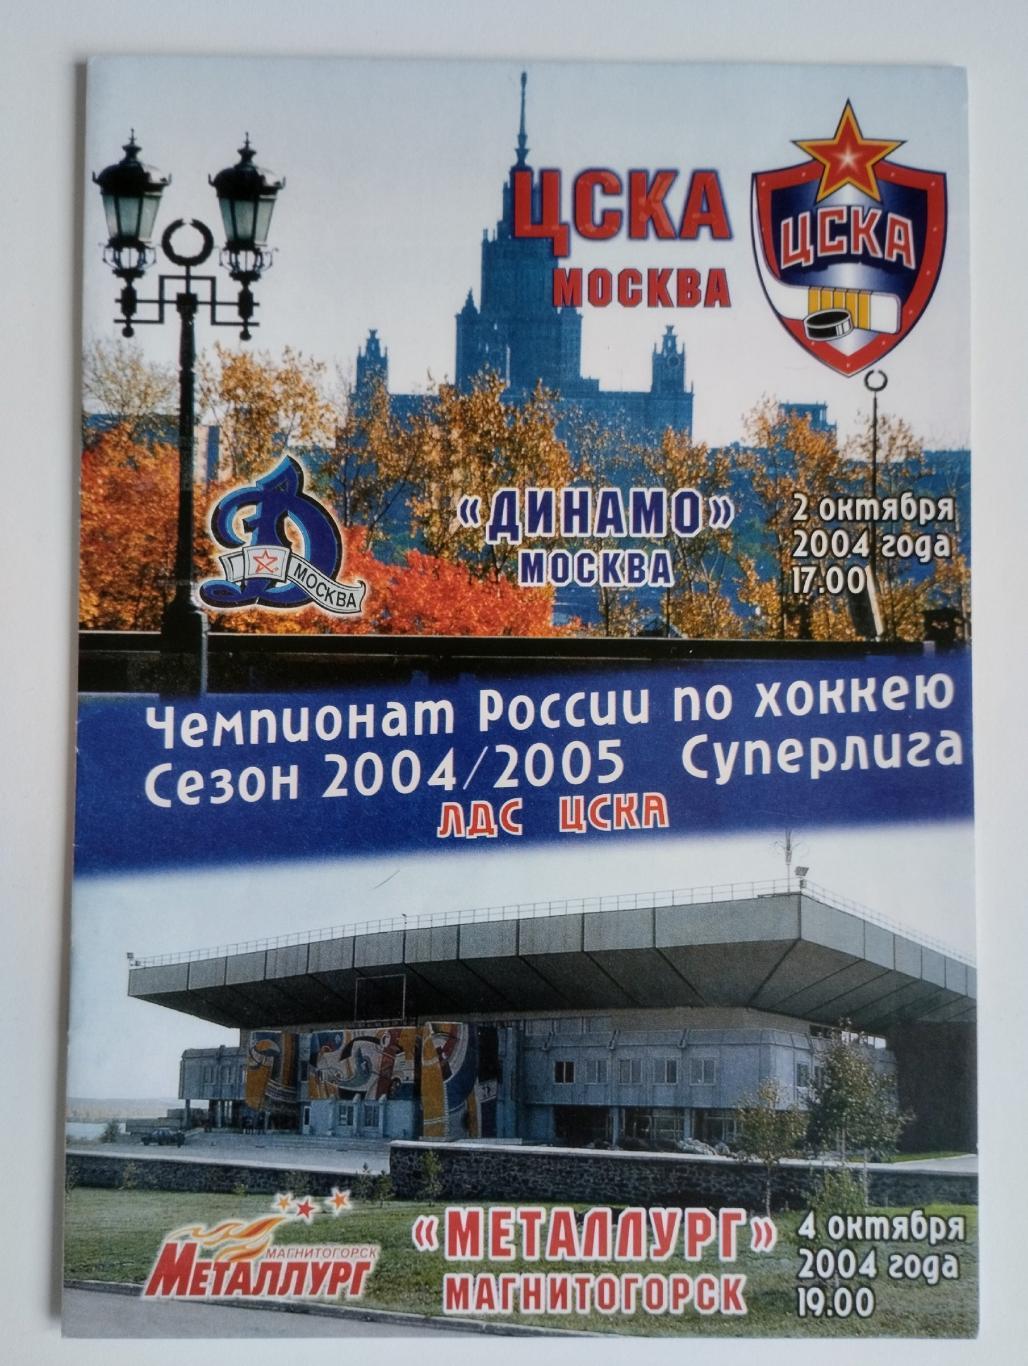 ЦСКА Москва - Динамо Москва, Металлург Магнитогорск 2,4.10.2004